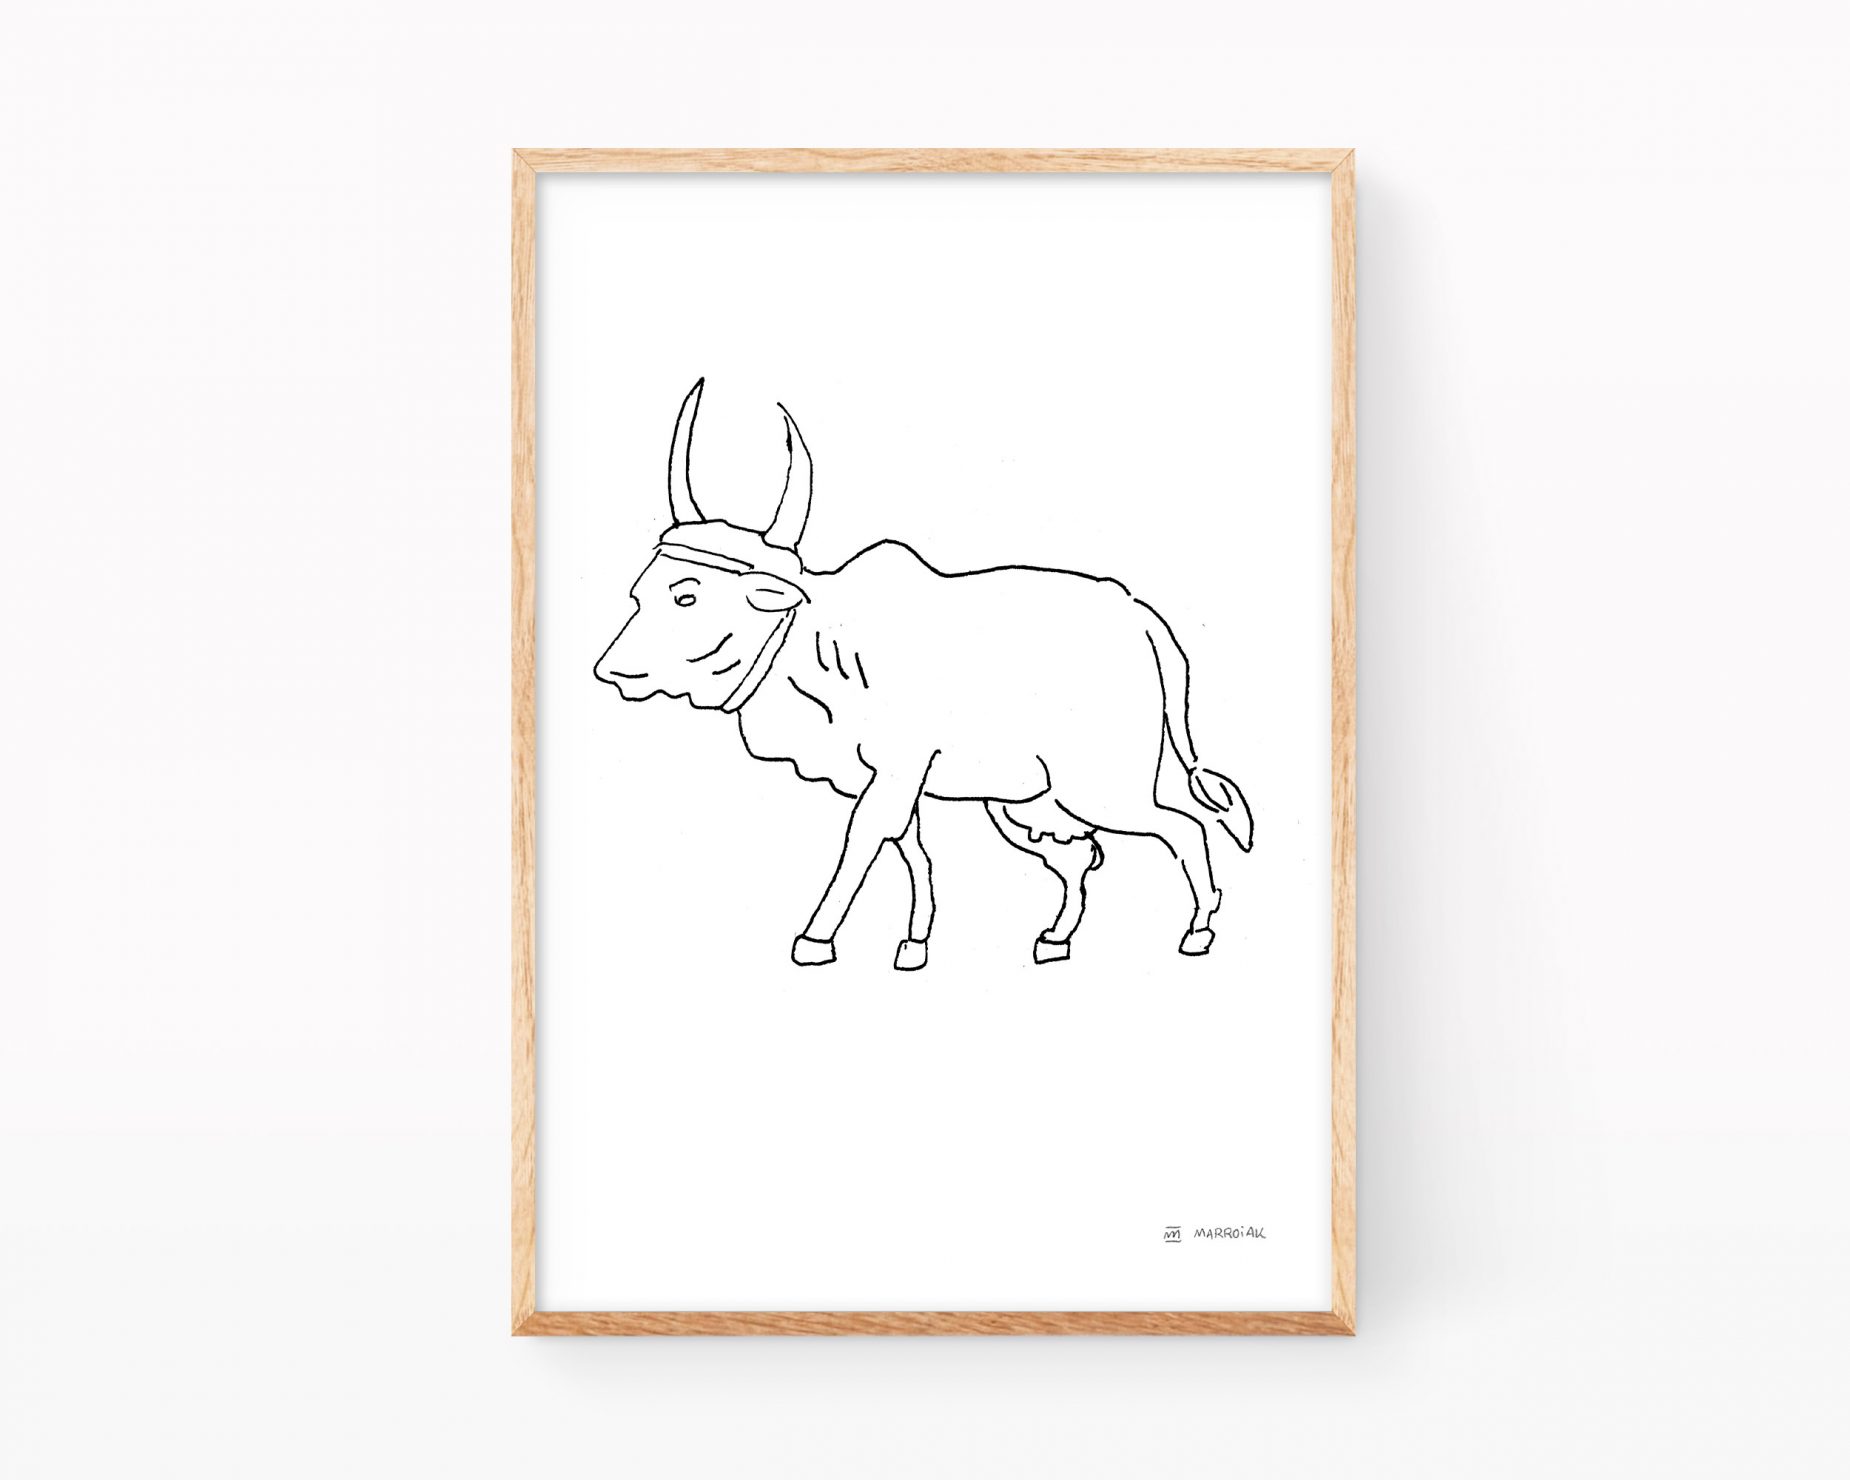 Lámina con una ilustración de una vaca de la raza India Brahman. Dibujo en blanco y negro